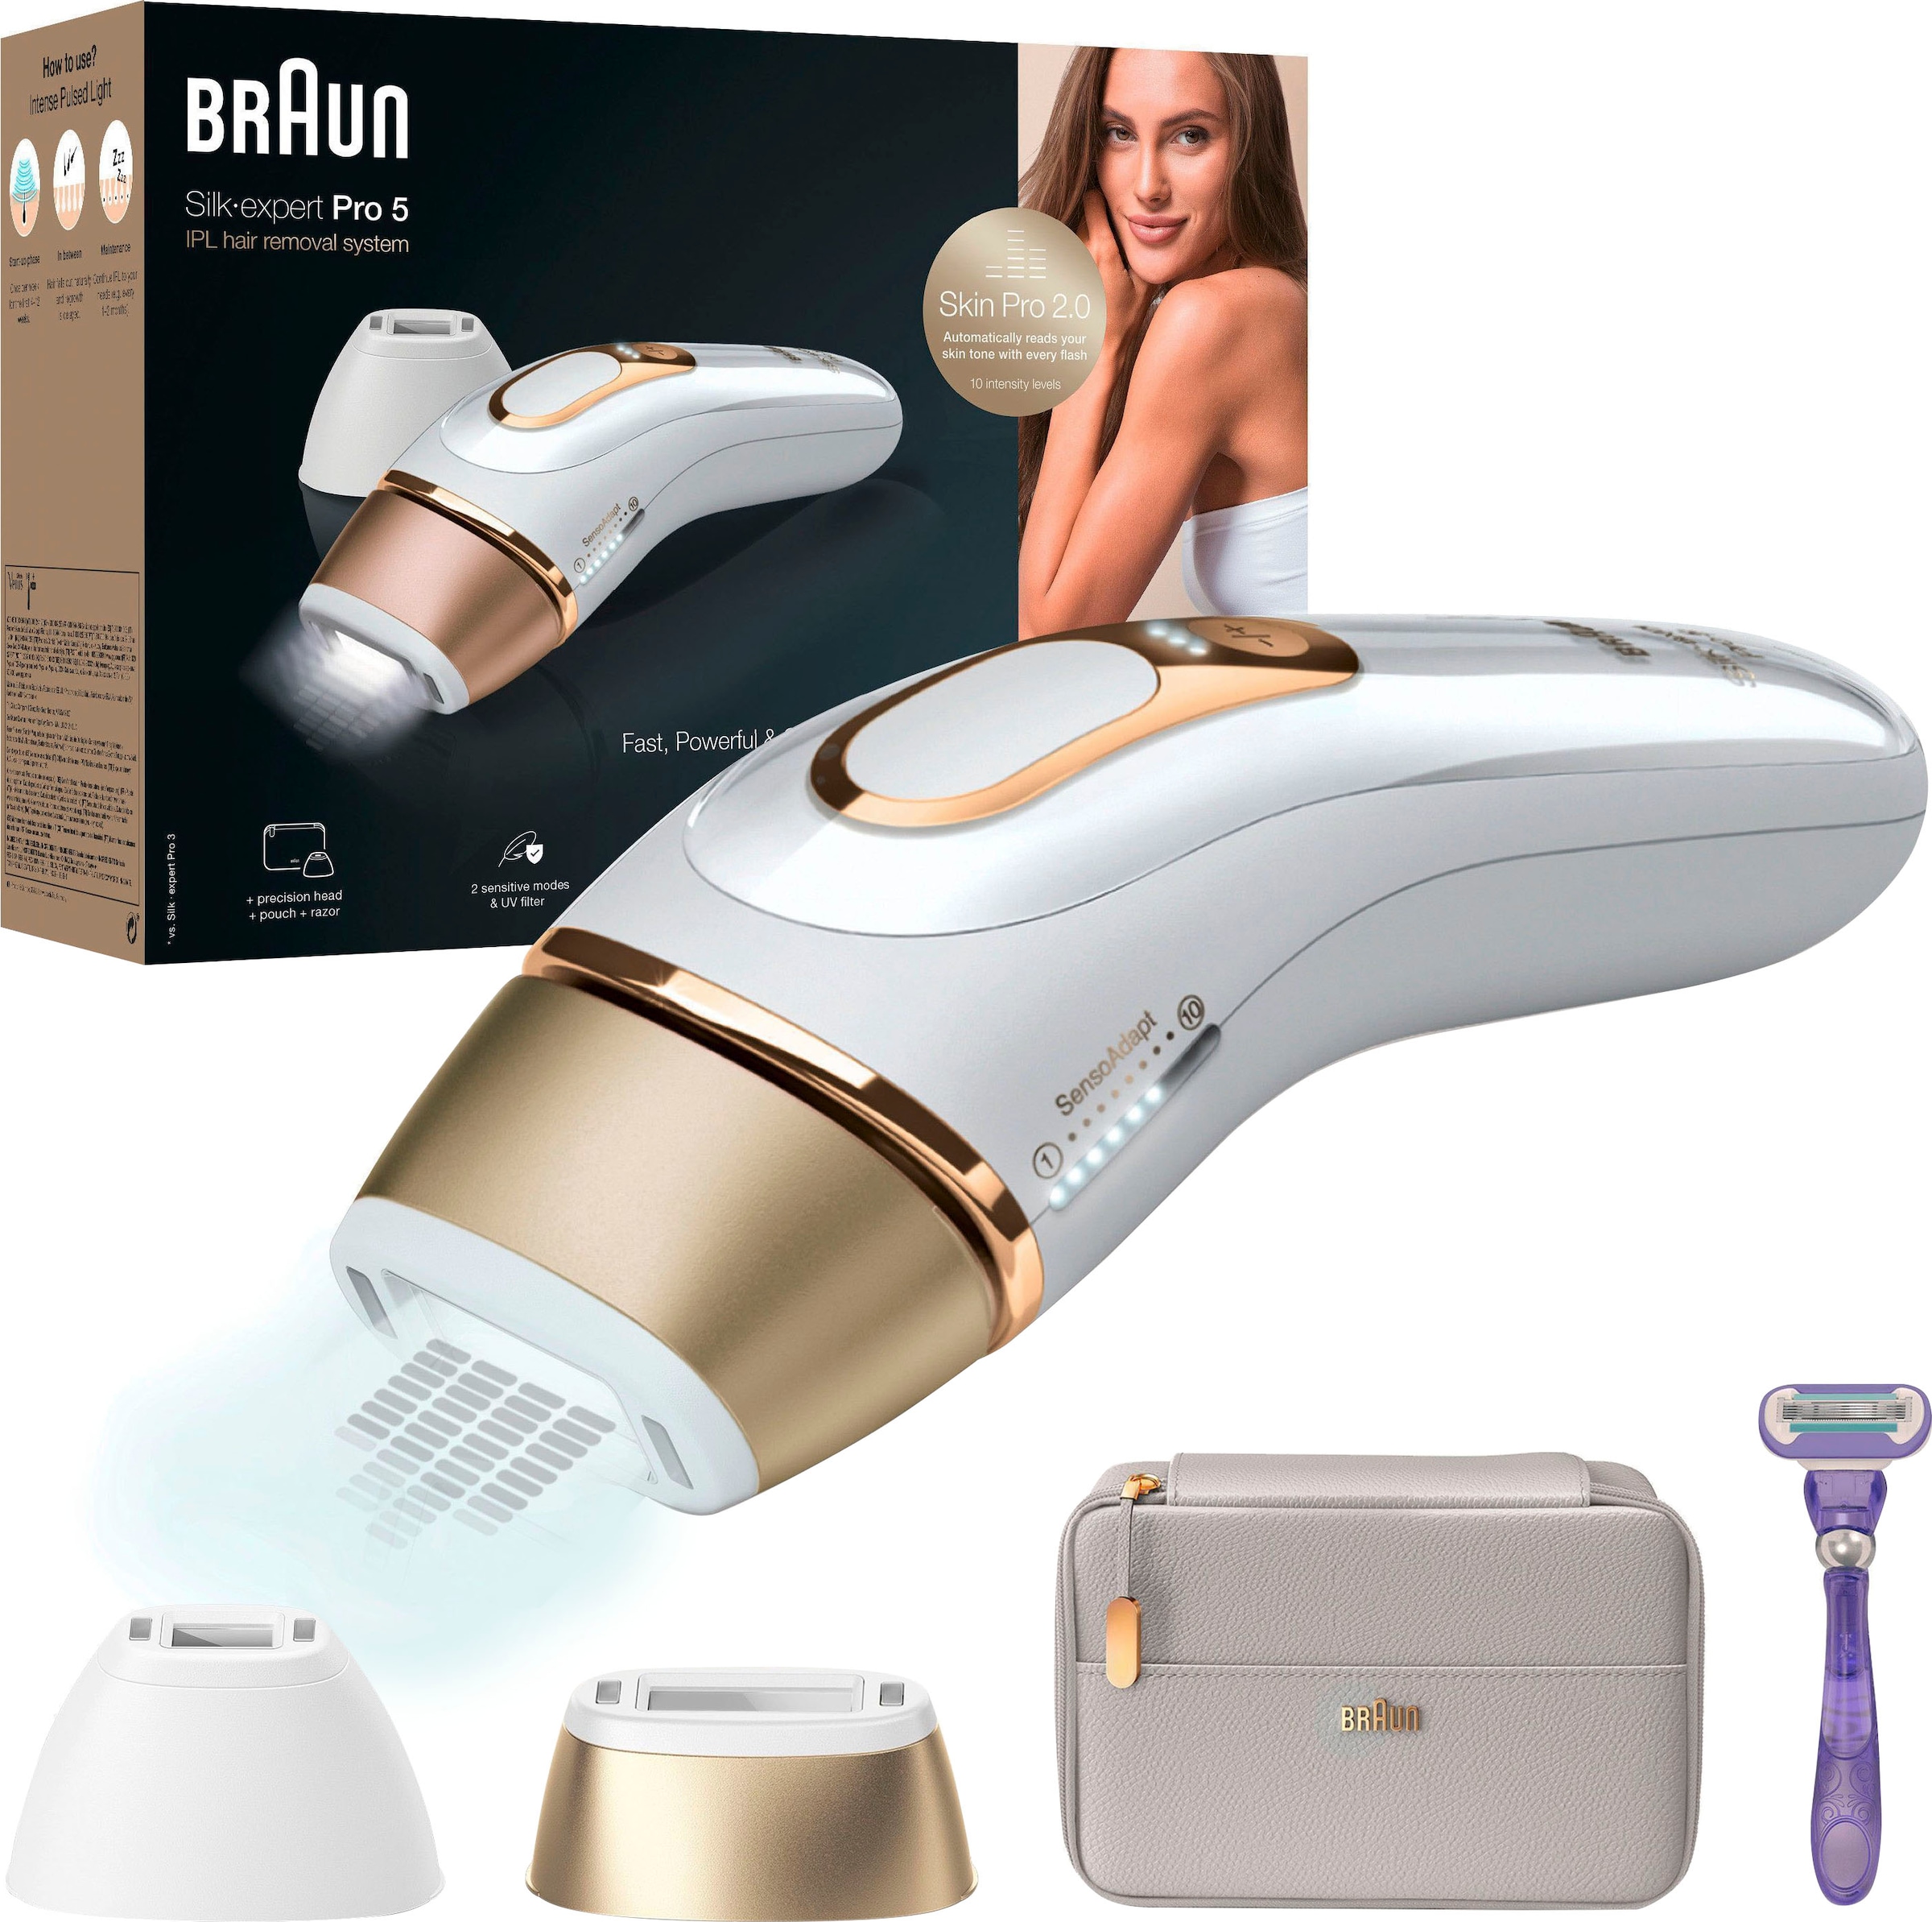 ♕ Braun IPL-Haarentferner »Silk-Expert Pro 5 PL5157 IPL«, 400.000  Lichtimpulse, Skin Pro 2.0 Sensor versandkostenfrei auf